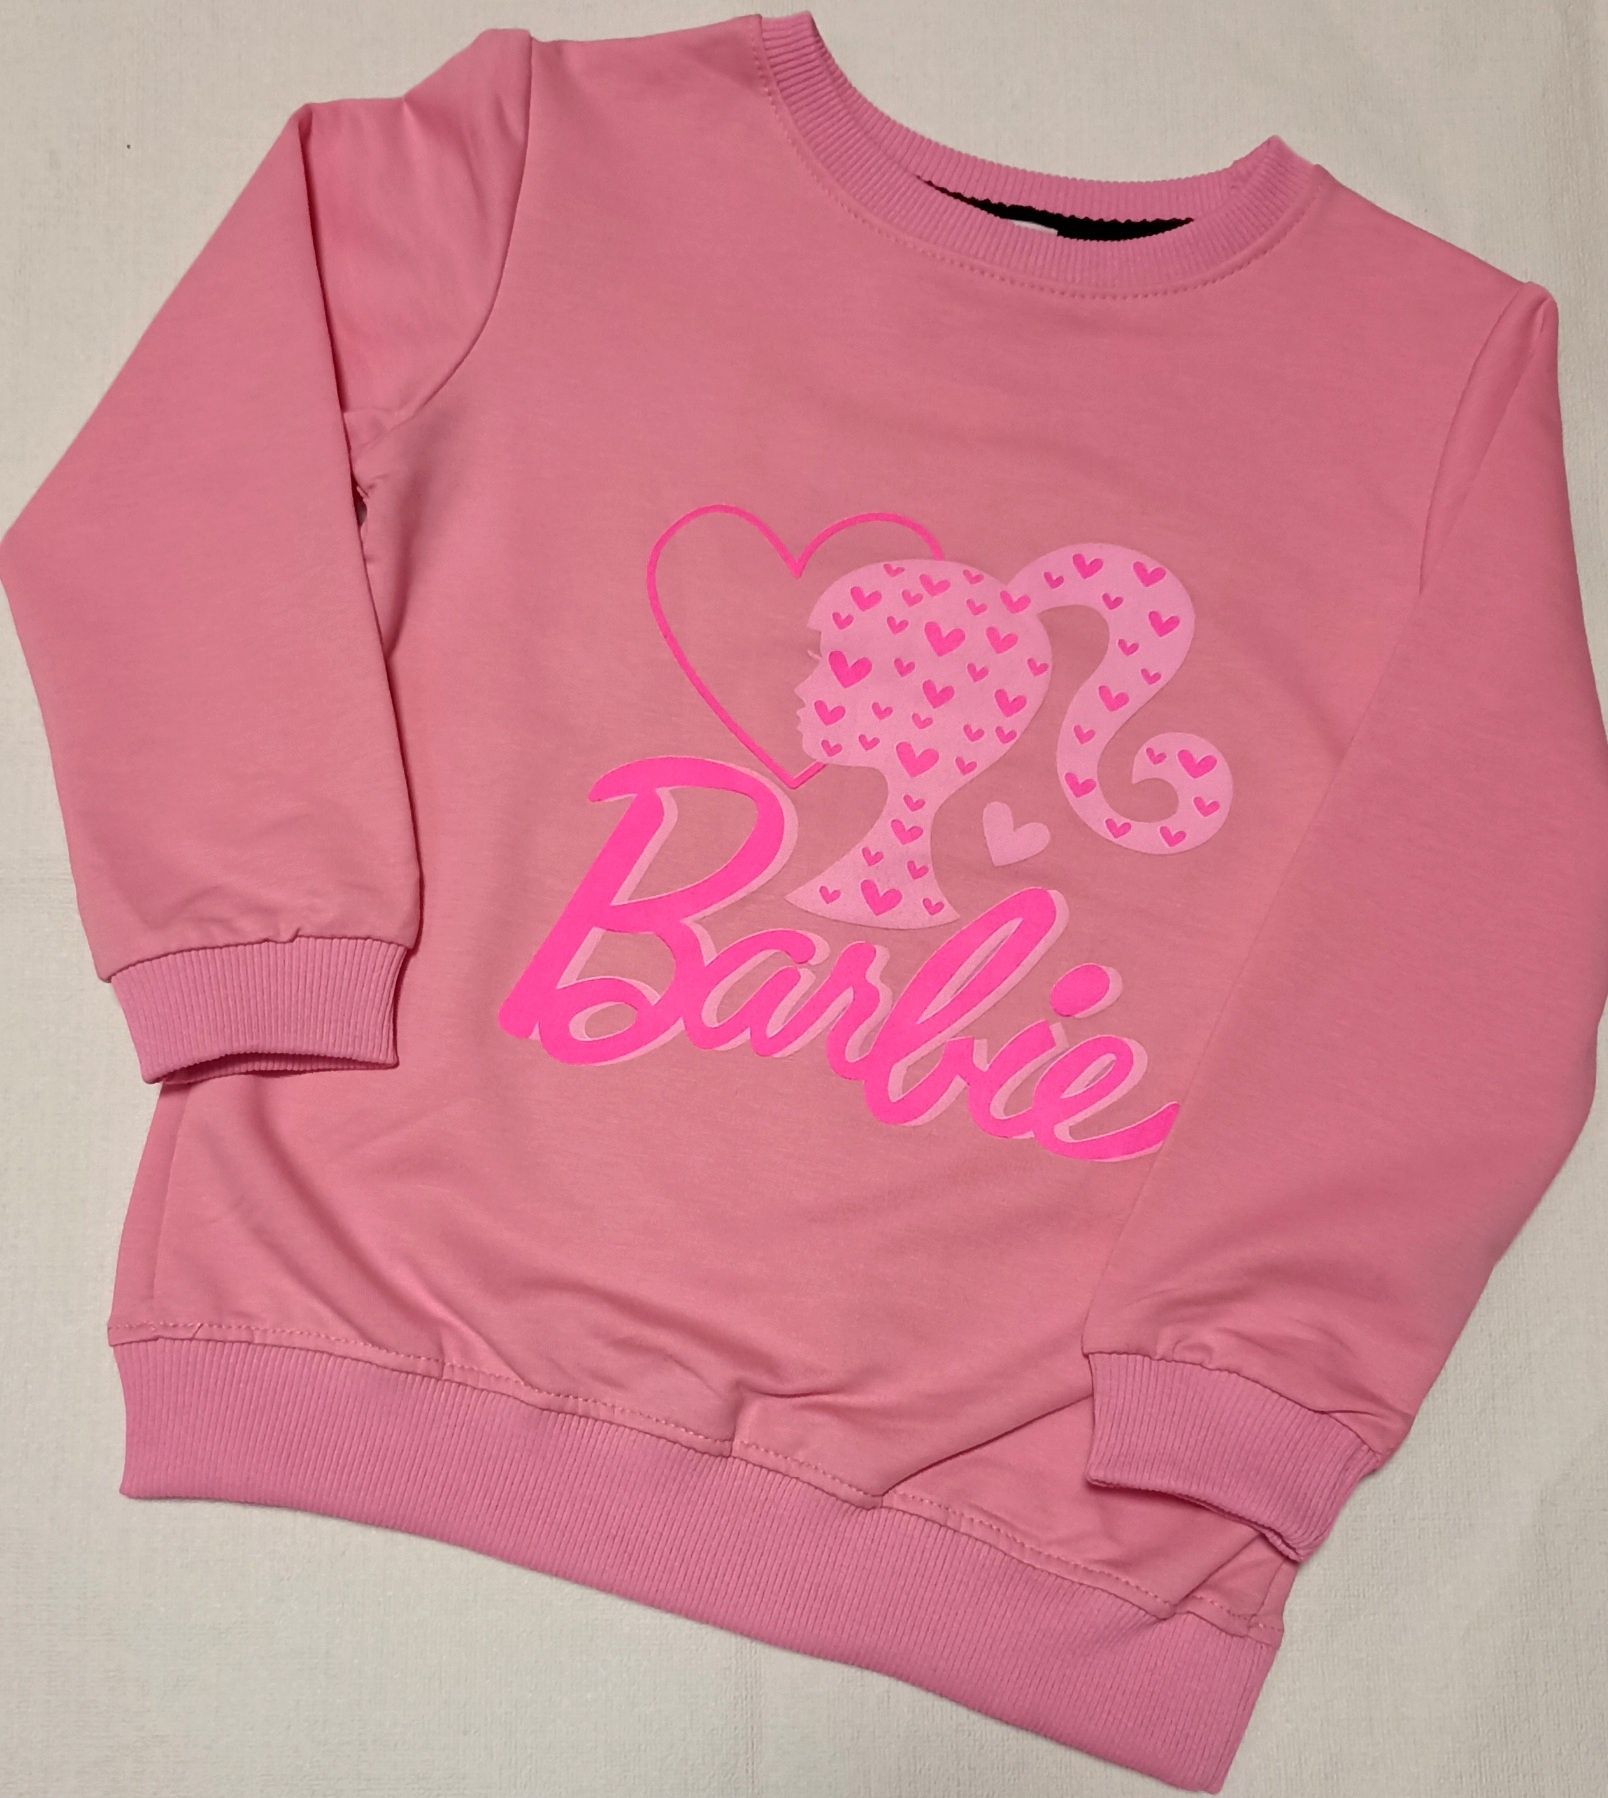 РОЗПРОДАЖ!! Barbie світшоти,  реглан Барбі одяг, одежда Барби лосины